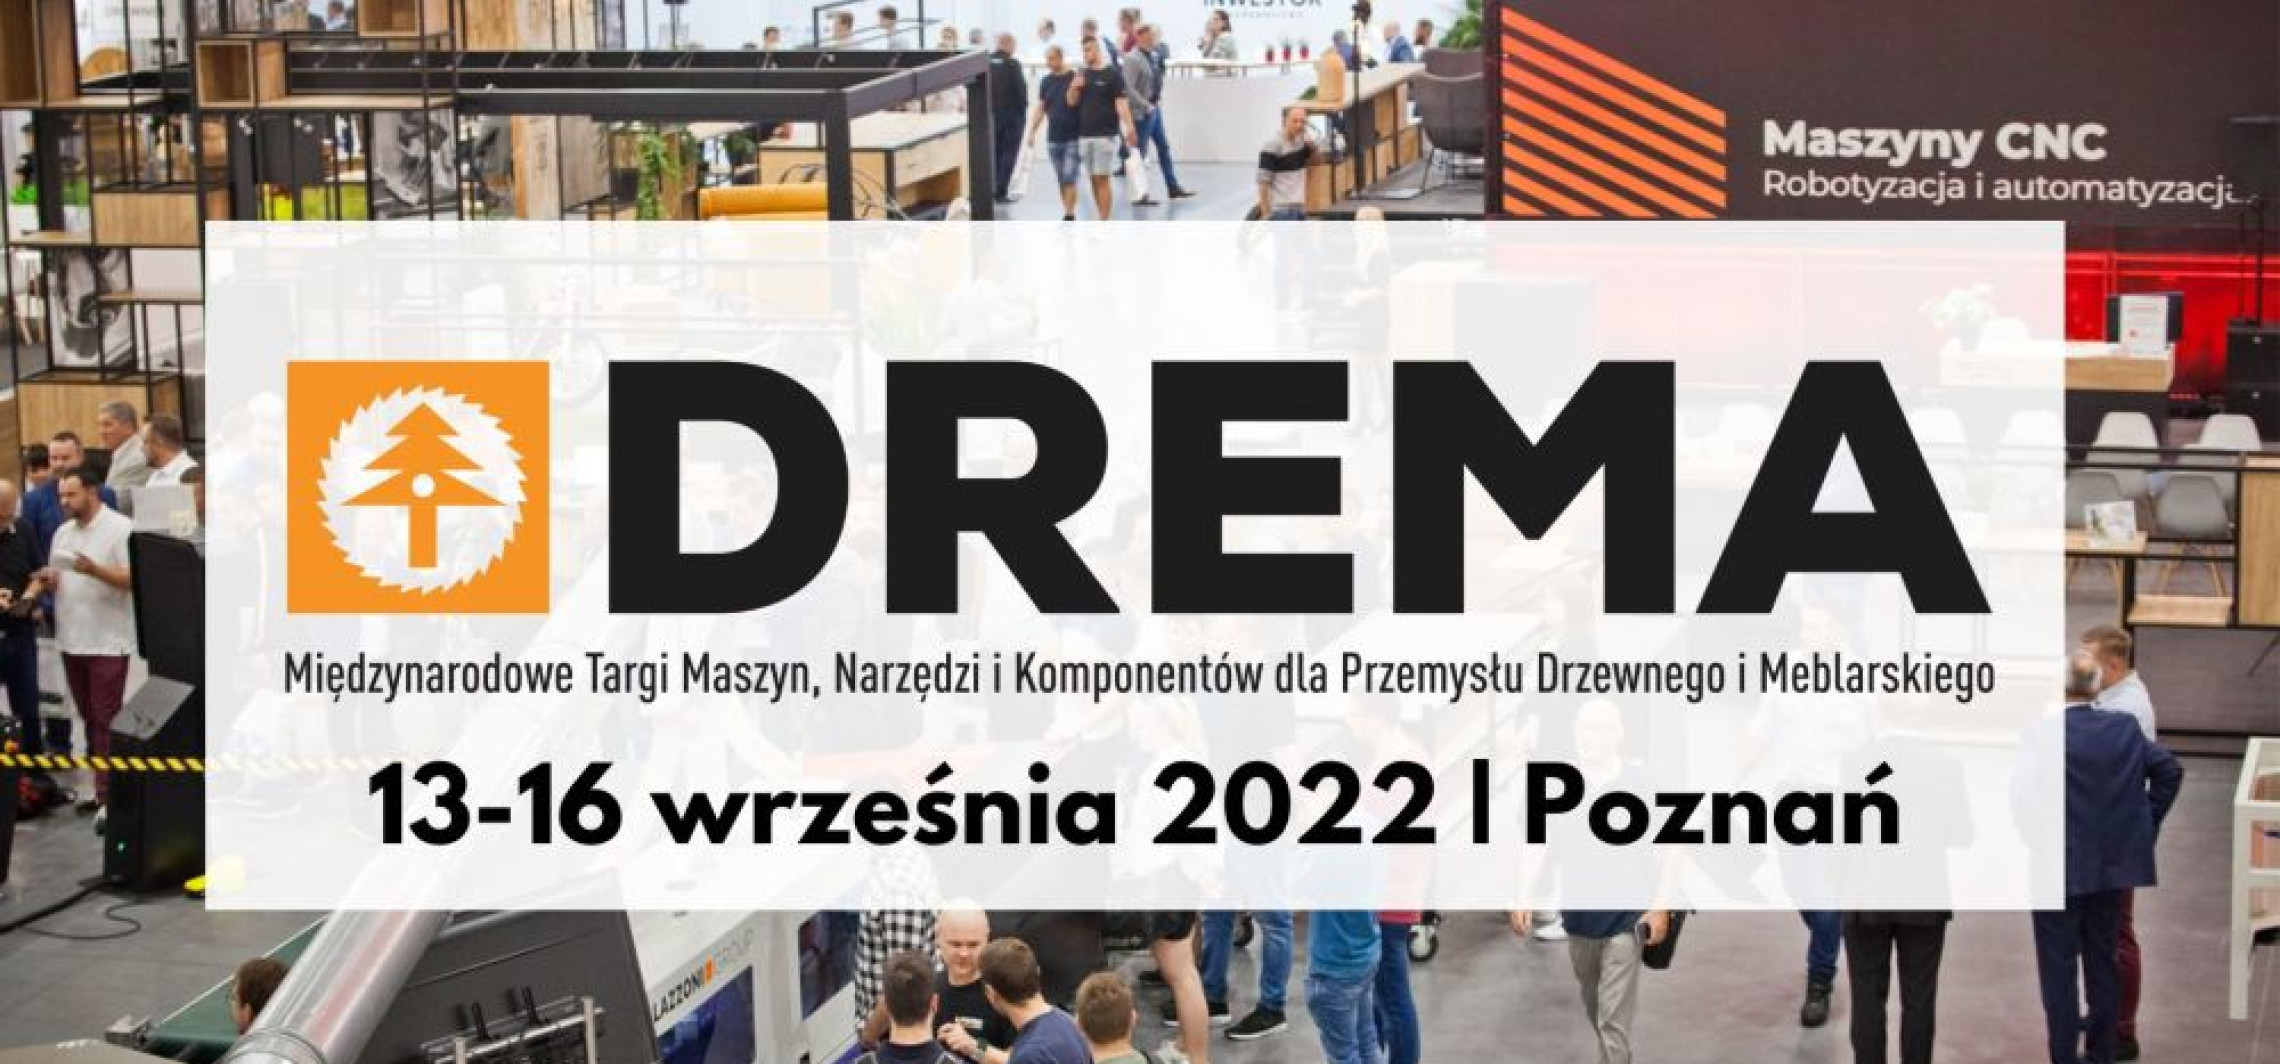 Kraj - DREMA 2022: spotkanie branży i pomoc ukraińskim dzieciom